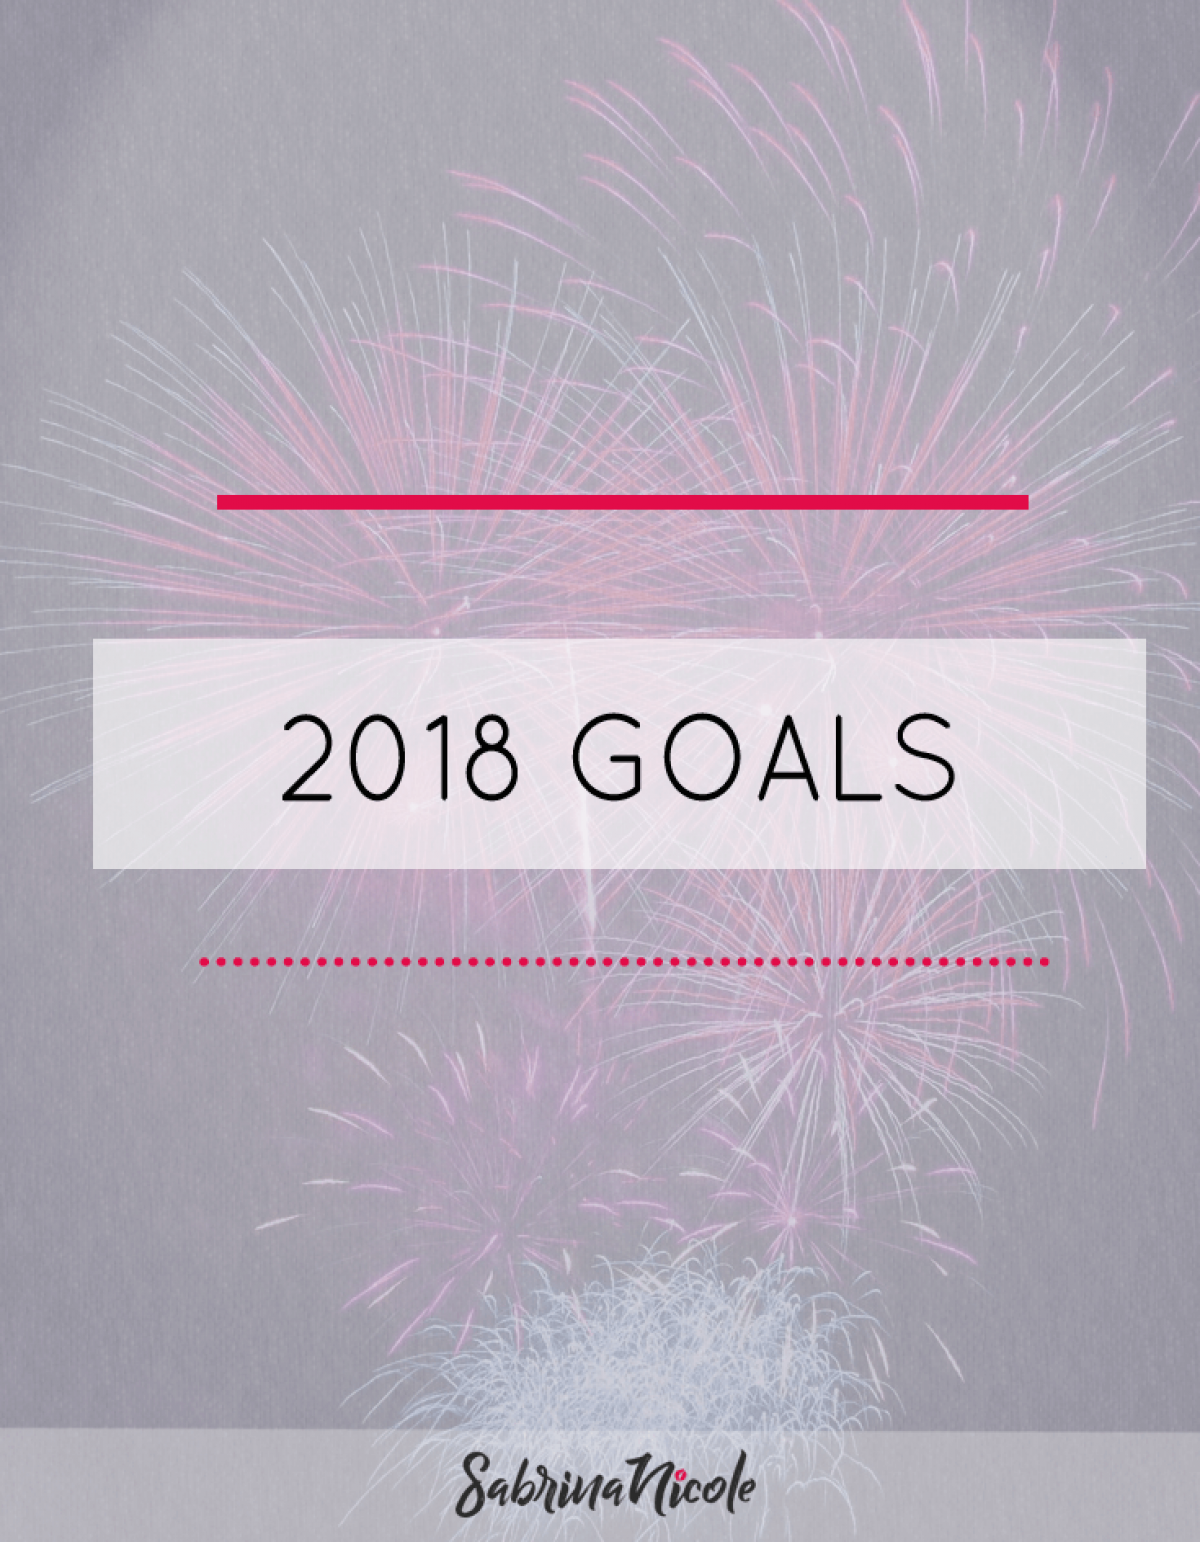 My 2018 Goals